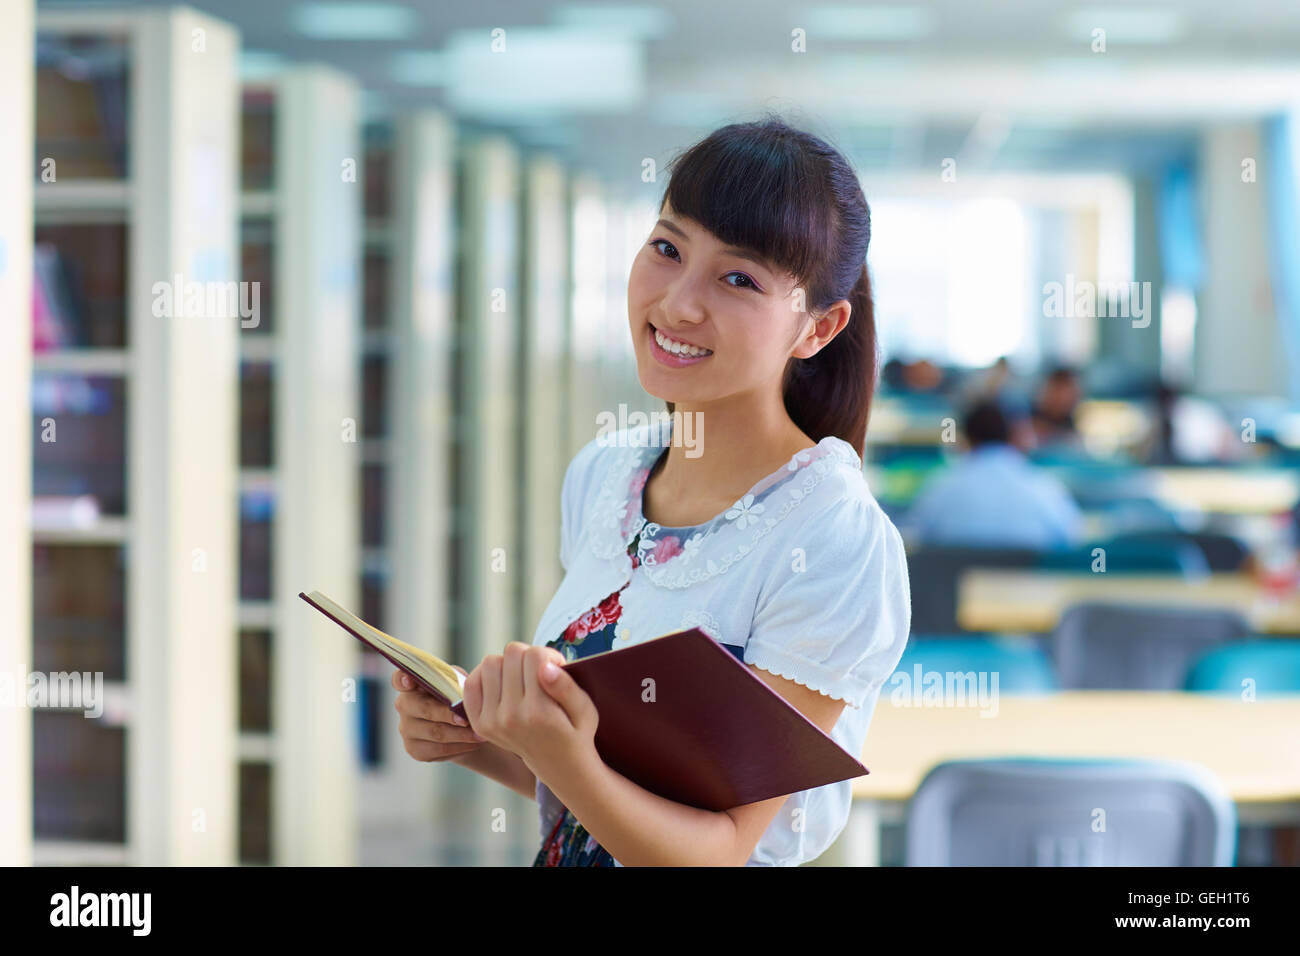 Un jeune étudiant chinois ou asiatiques dans la bibliothèque d'étude Banque D'Images